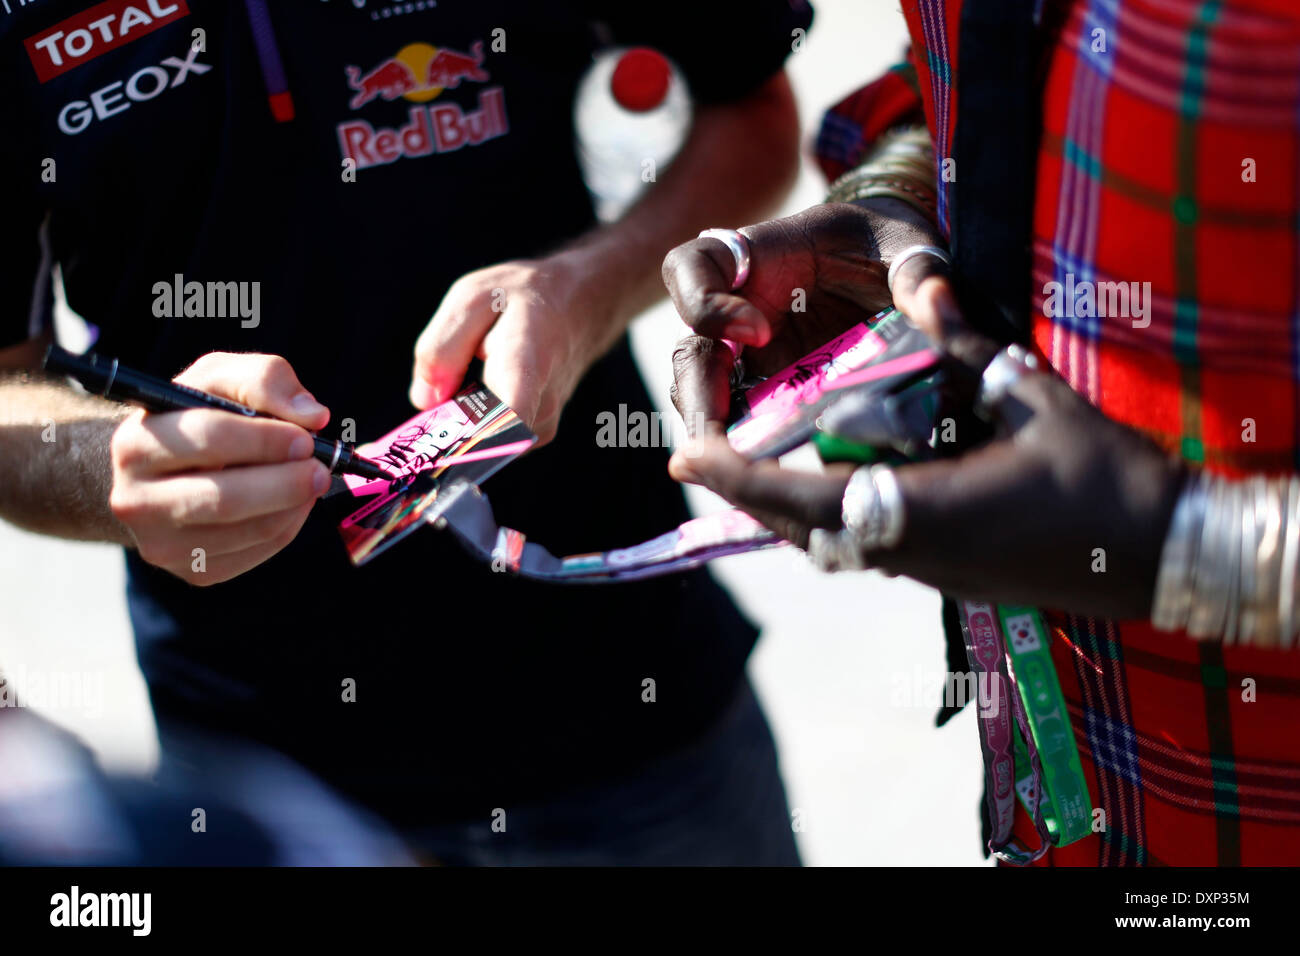 Motorsports: FIA Formula One World Championship 2014, il Gran Premio della Malesia, #1 Sebastian Vettel (GER, Infiniti Red Bull Racing), Autogramm, autograph Foto Stock